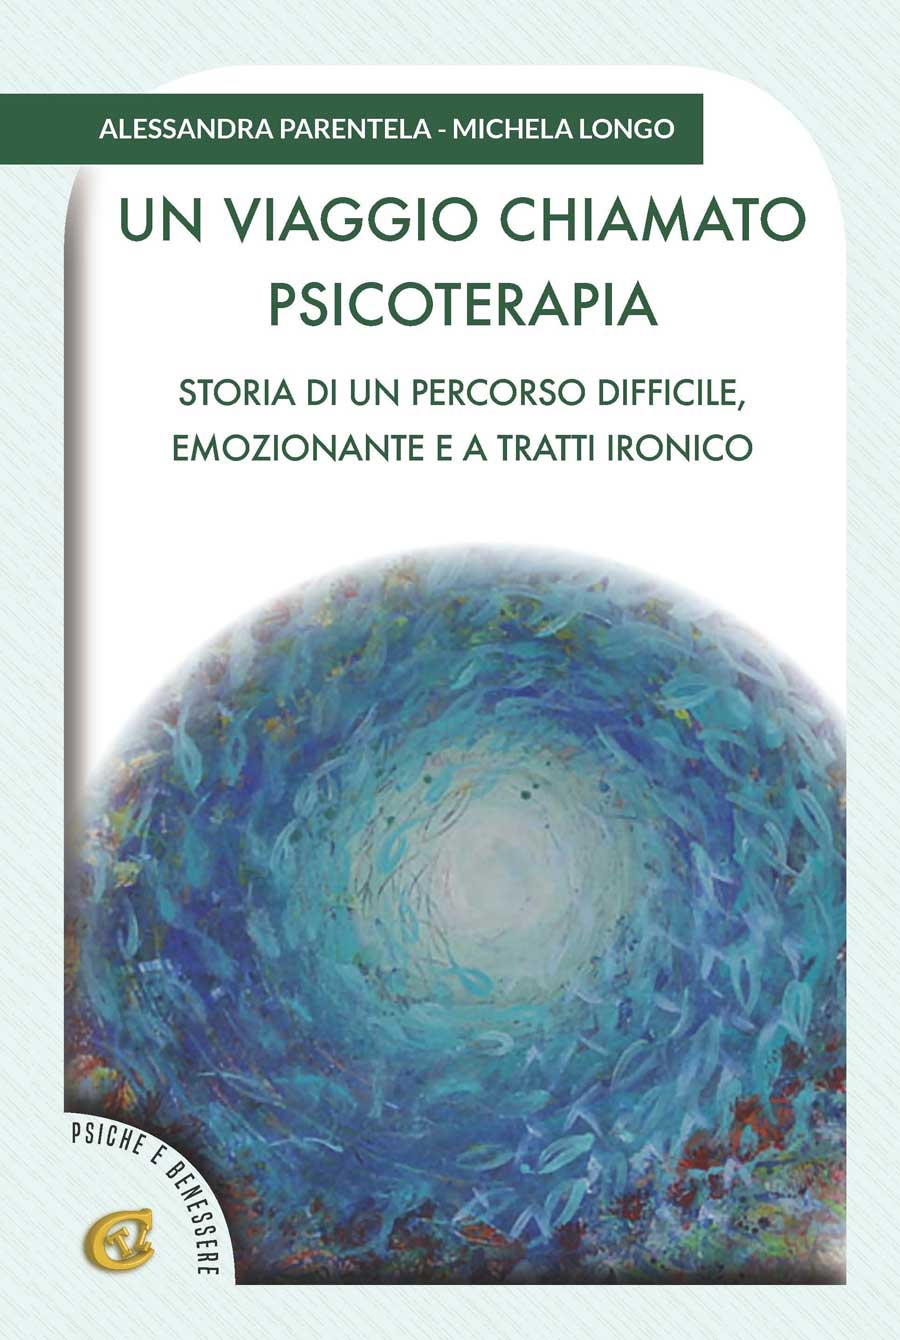 Un viaggio chiamato psicoterapia, il nuovo libro di Alessandra Parentela e Michela Longo